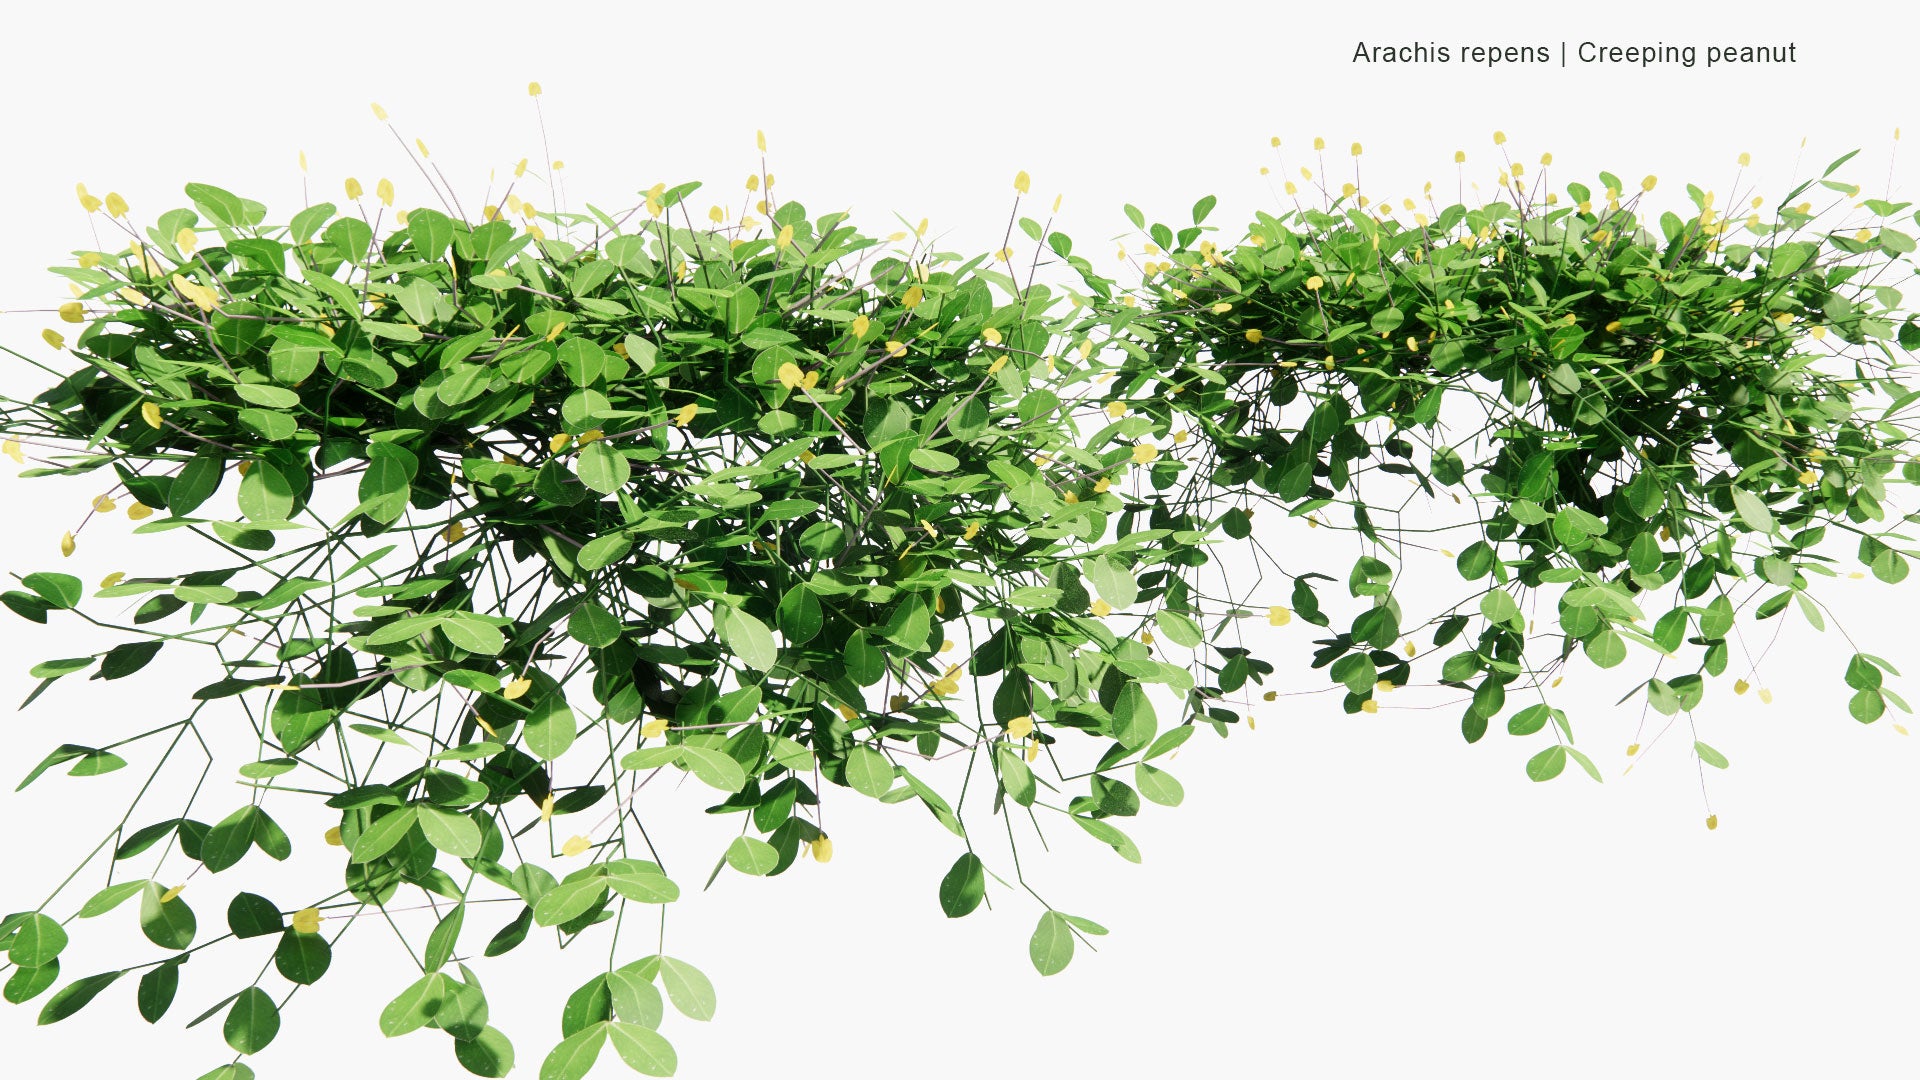 Low Poly Arachis Repens - Grama-Amendoim, Peanut Grass (3D Model)